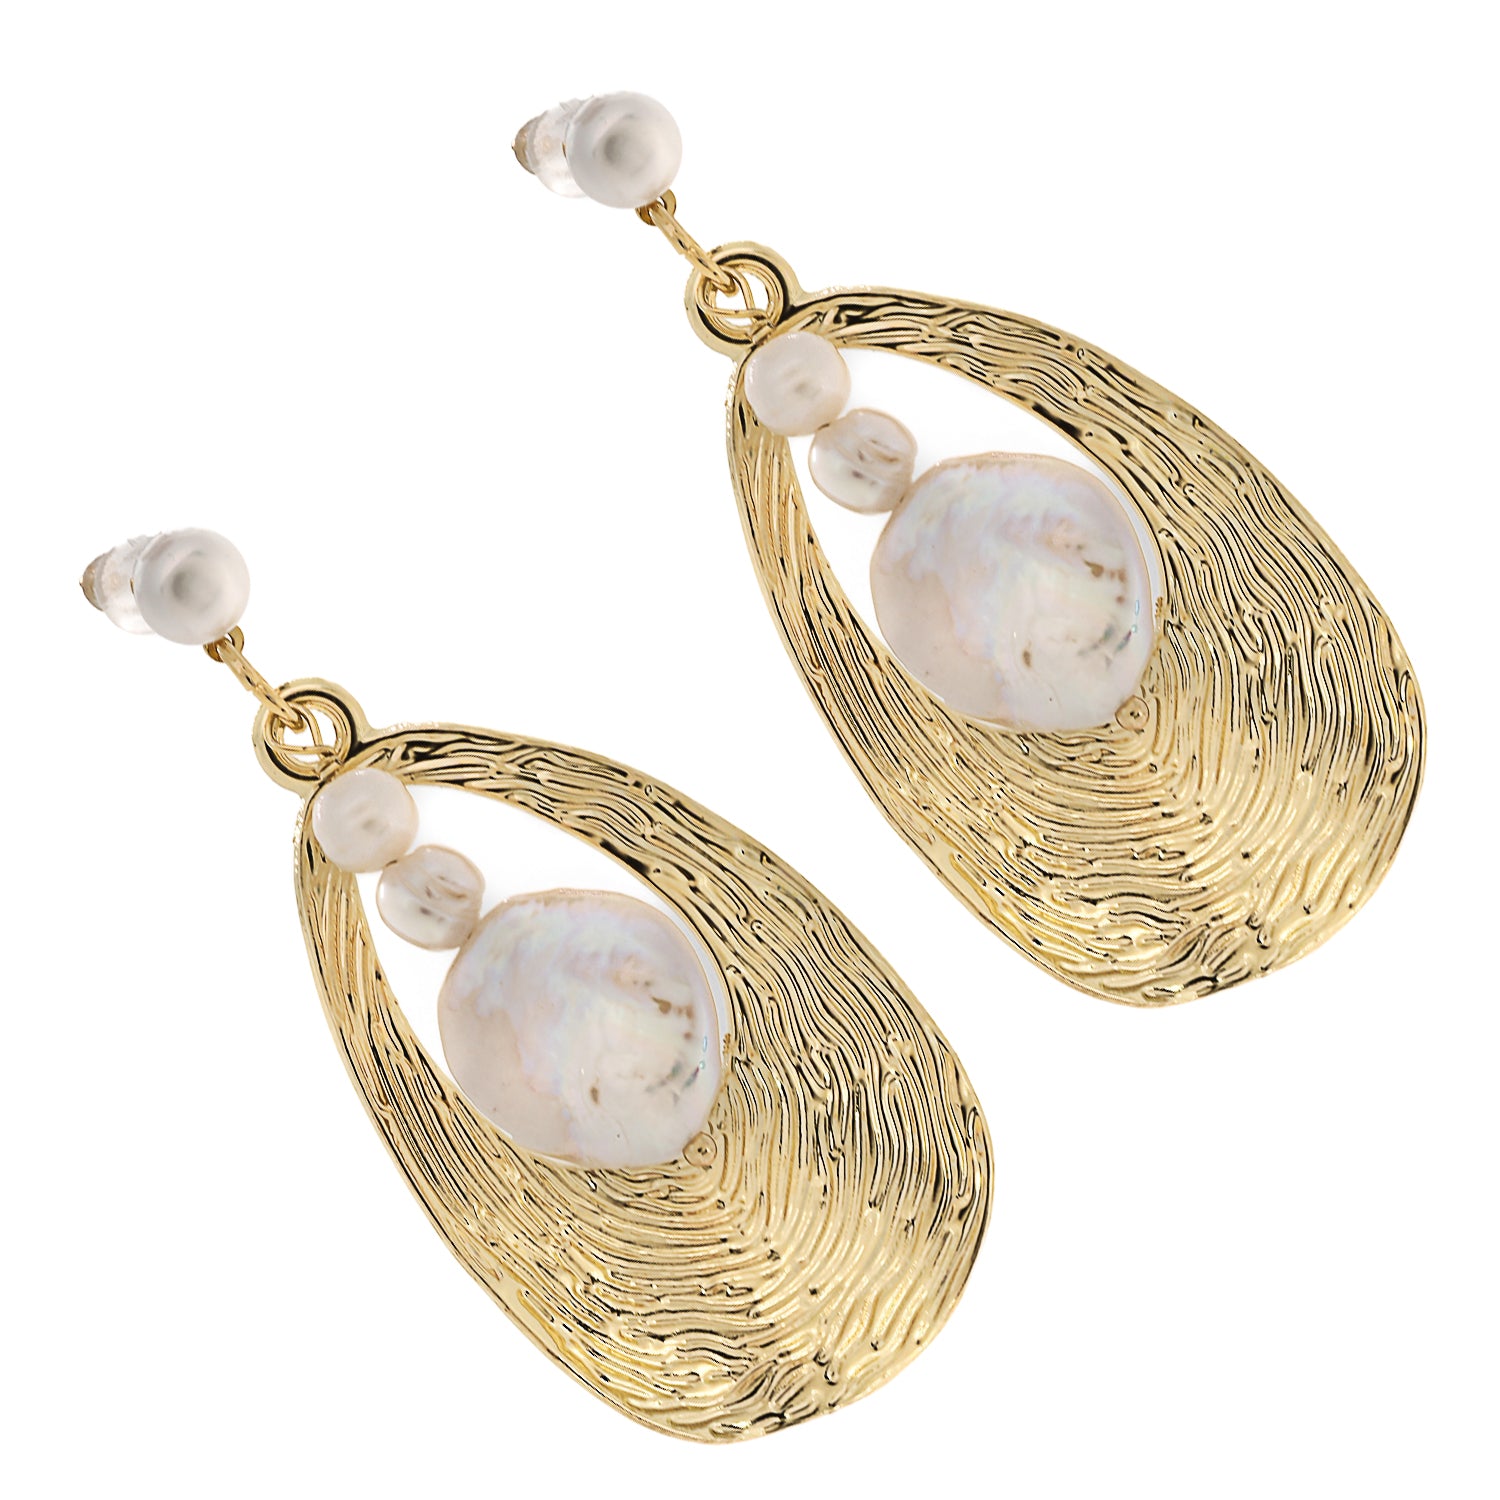 Dance of Light: Gold &amp; Pearl Dangle Earrings, Artisanal Beauty.